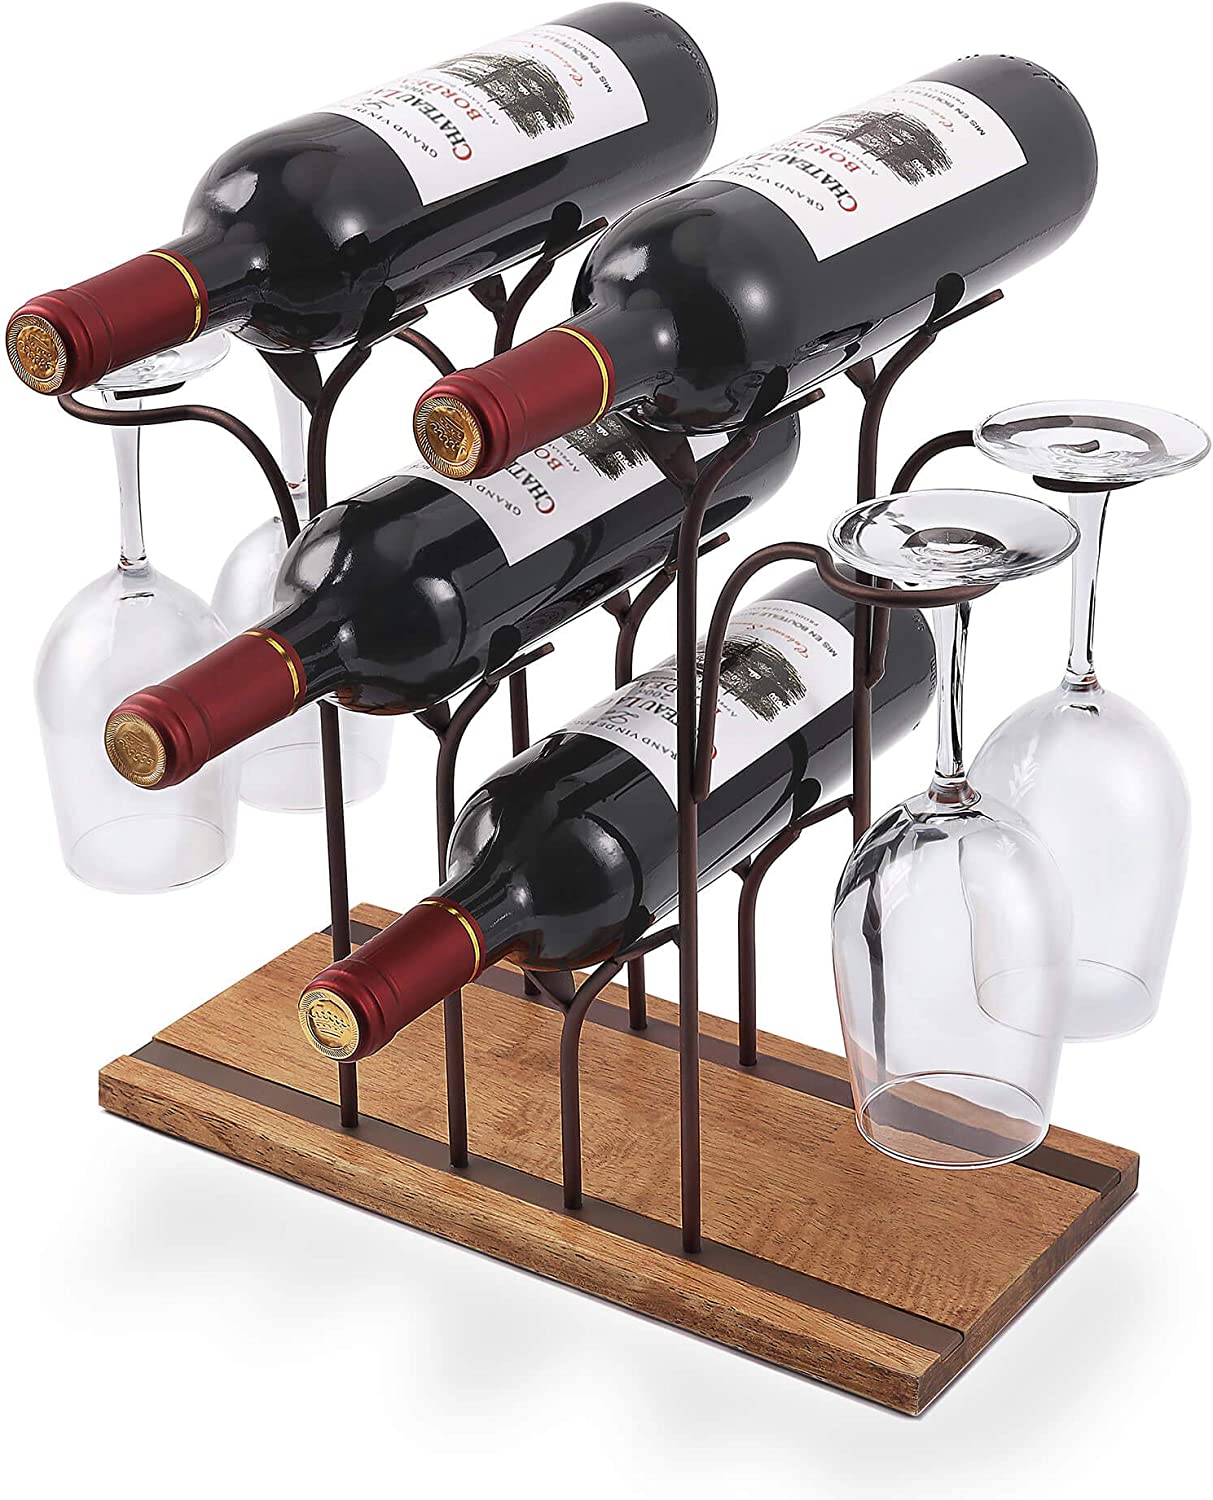 ALLCENER Classic Space Saving Wine Rack, 4-Bottle